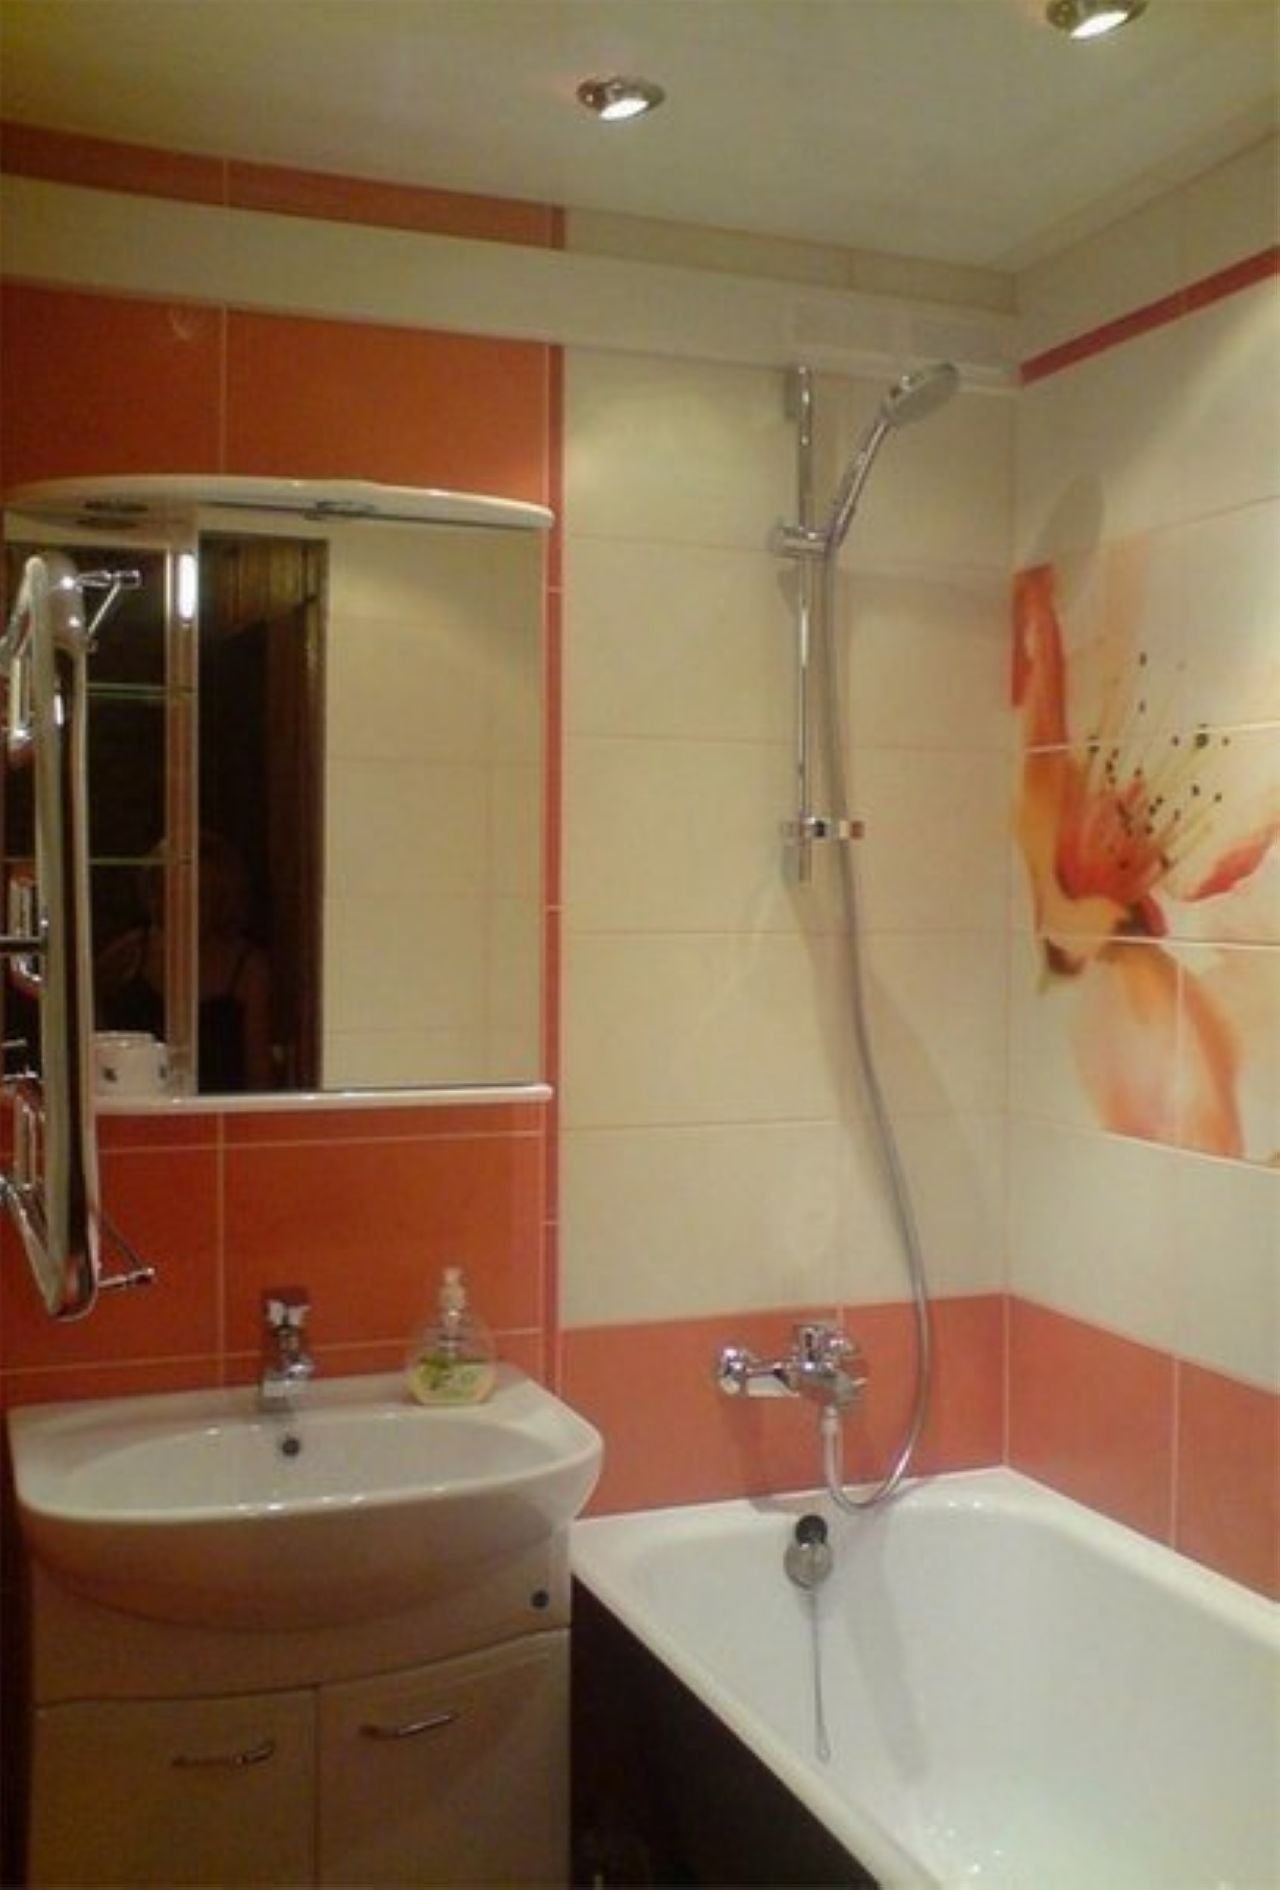 version du bel intérieur de la salle de bain à Khrouchtchev